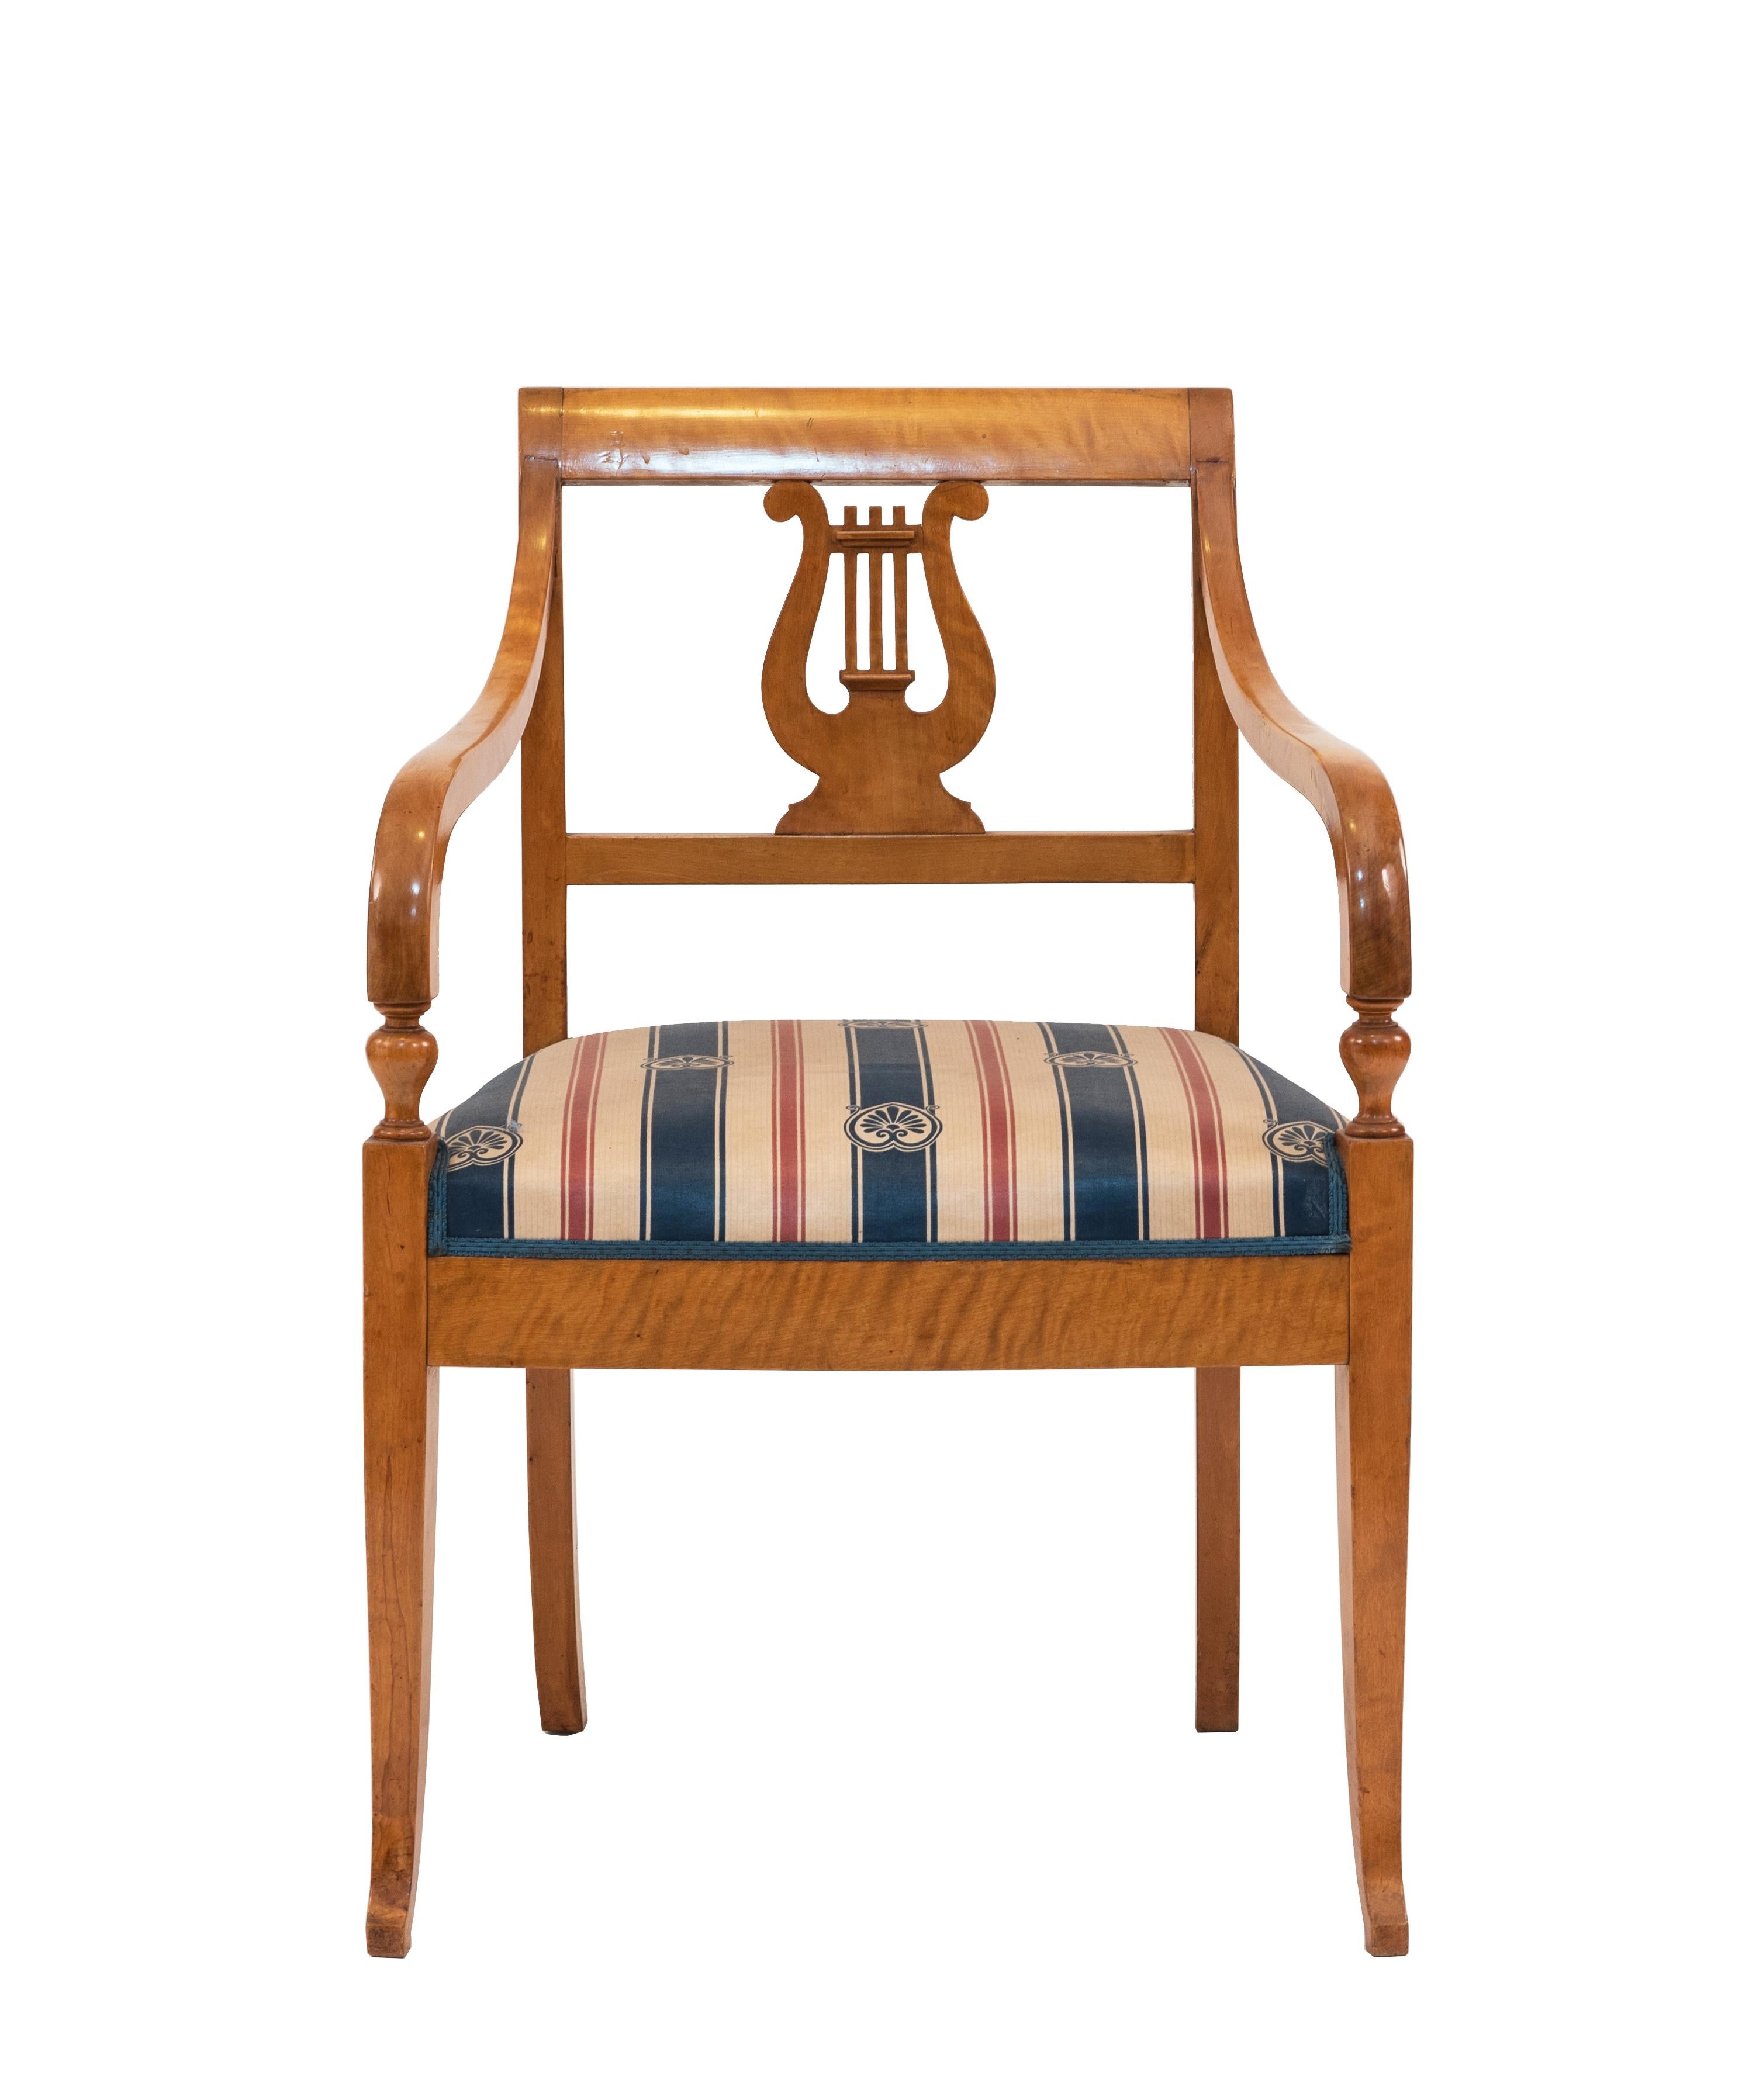 Schwedischer Biedermeier-Sessel (19/20. Jh.) aus Birke mit geschnitzter Leier und blau-rot gestreifter Polsterung
